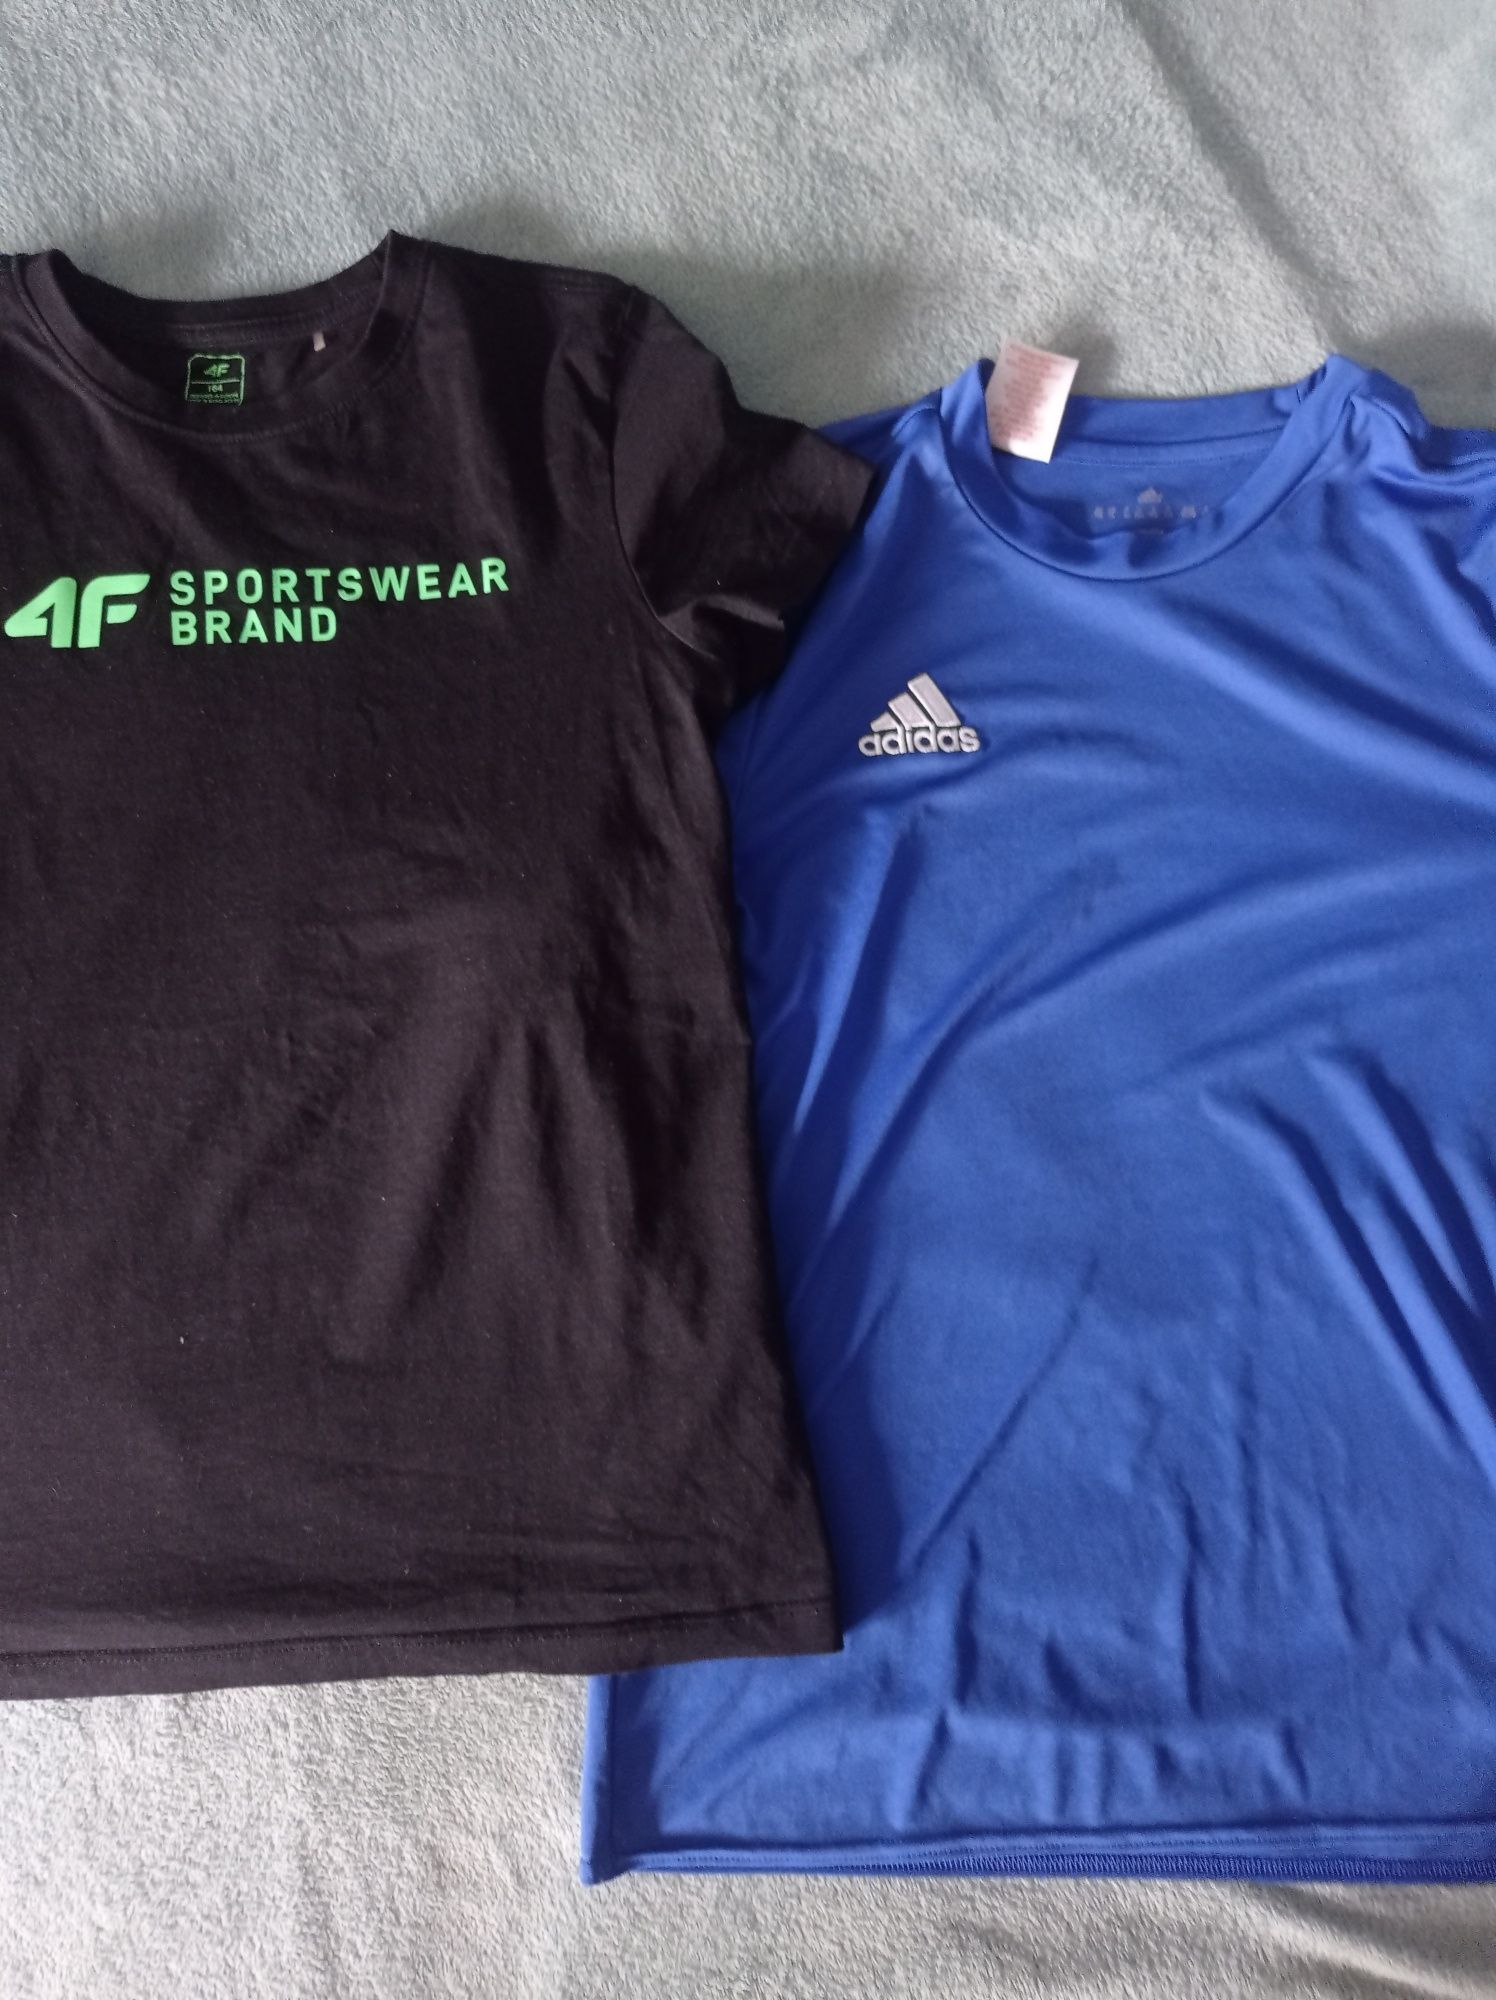 Koszulki Adidas i 4F